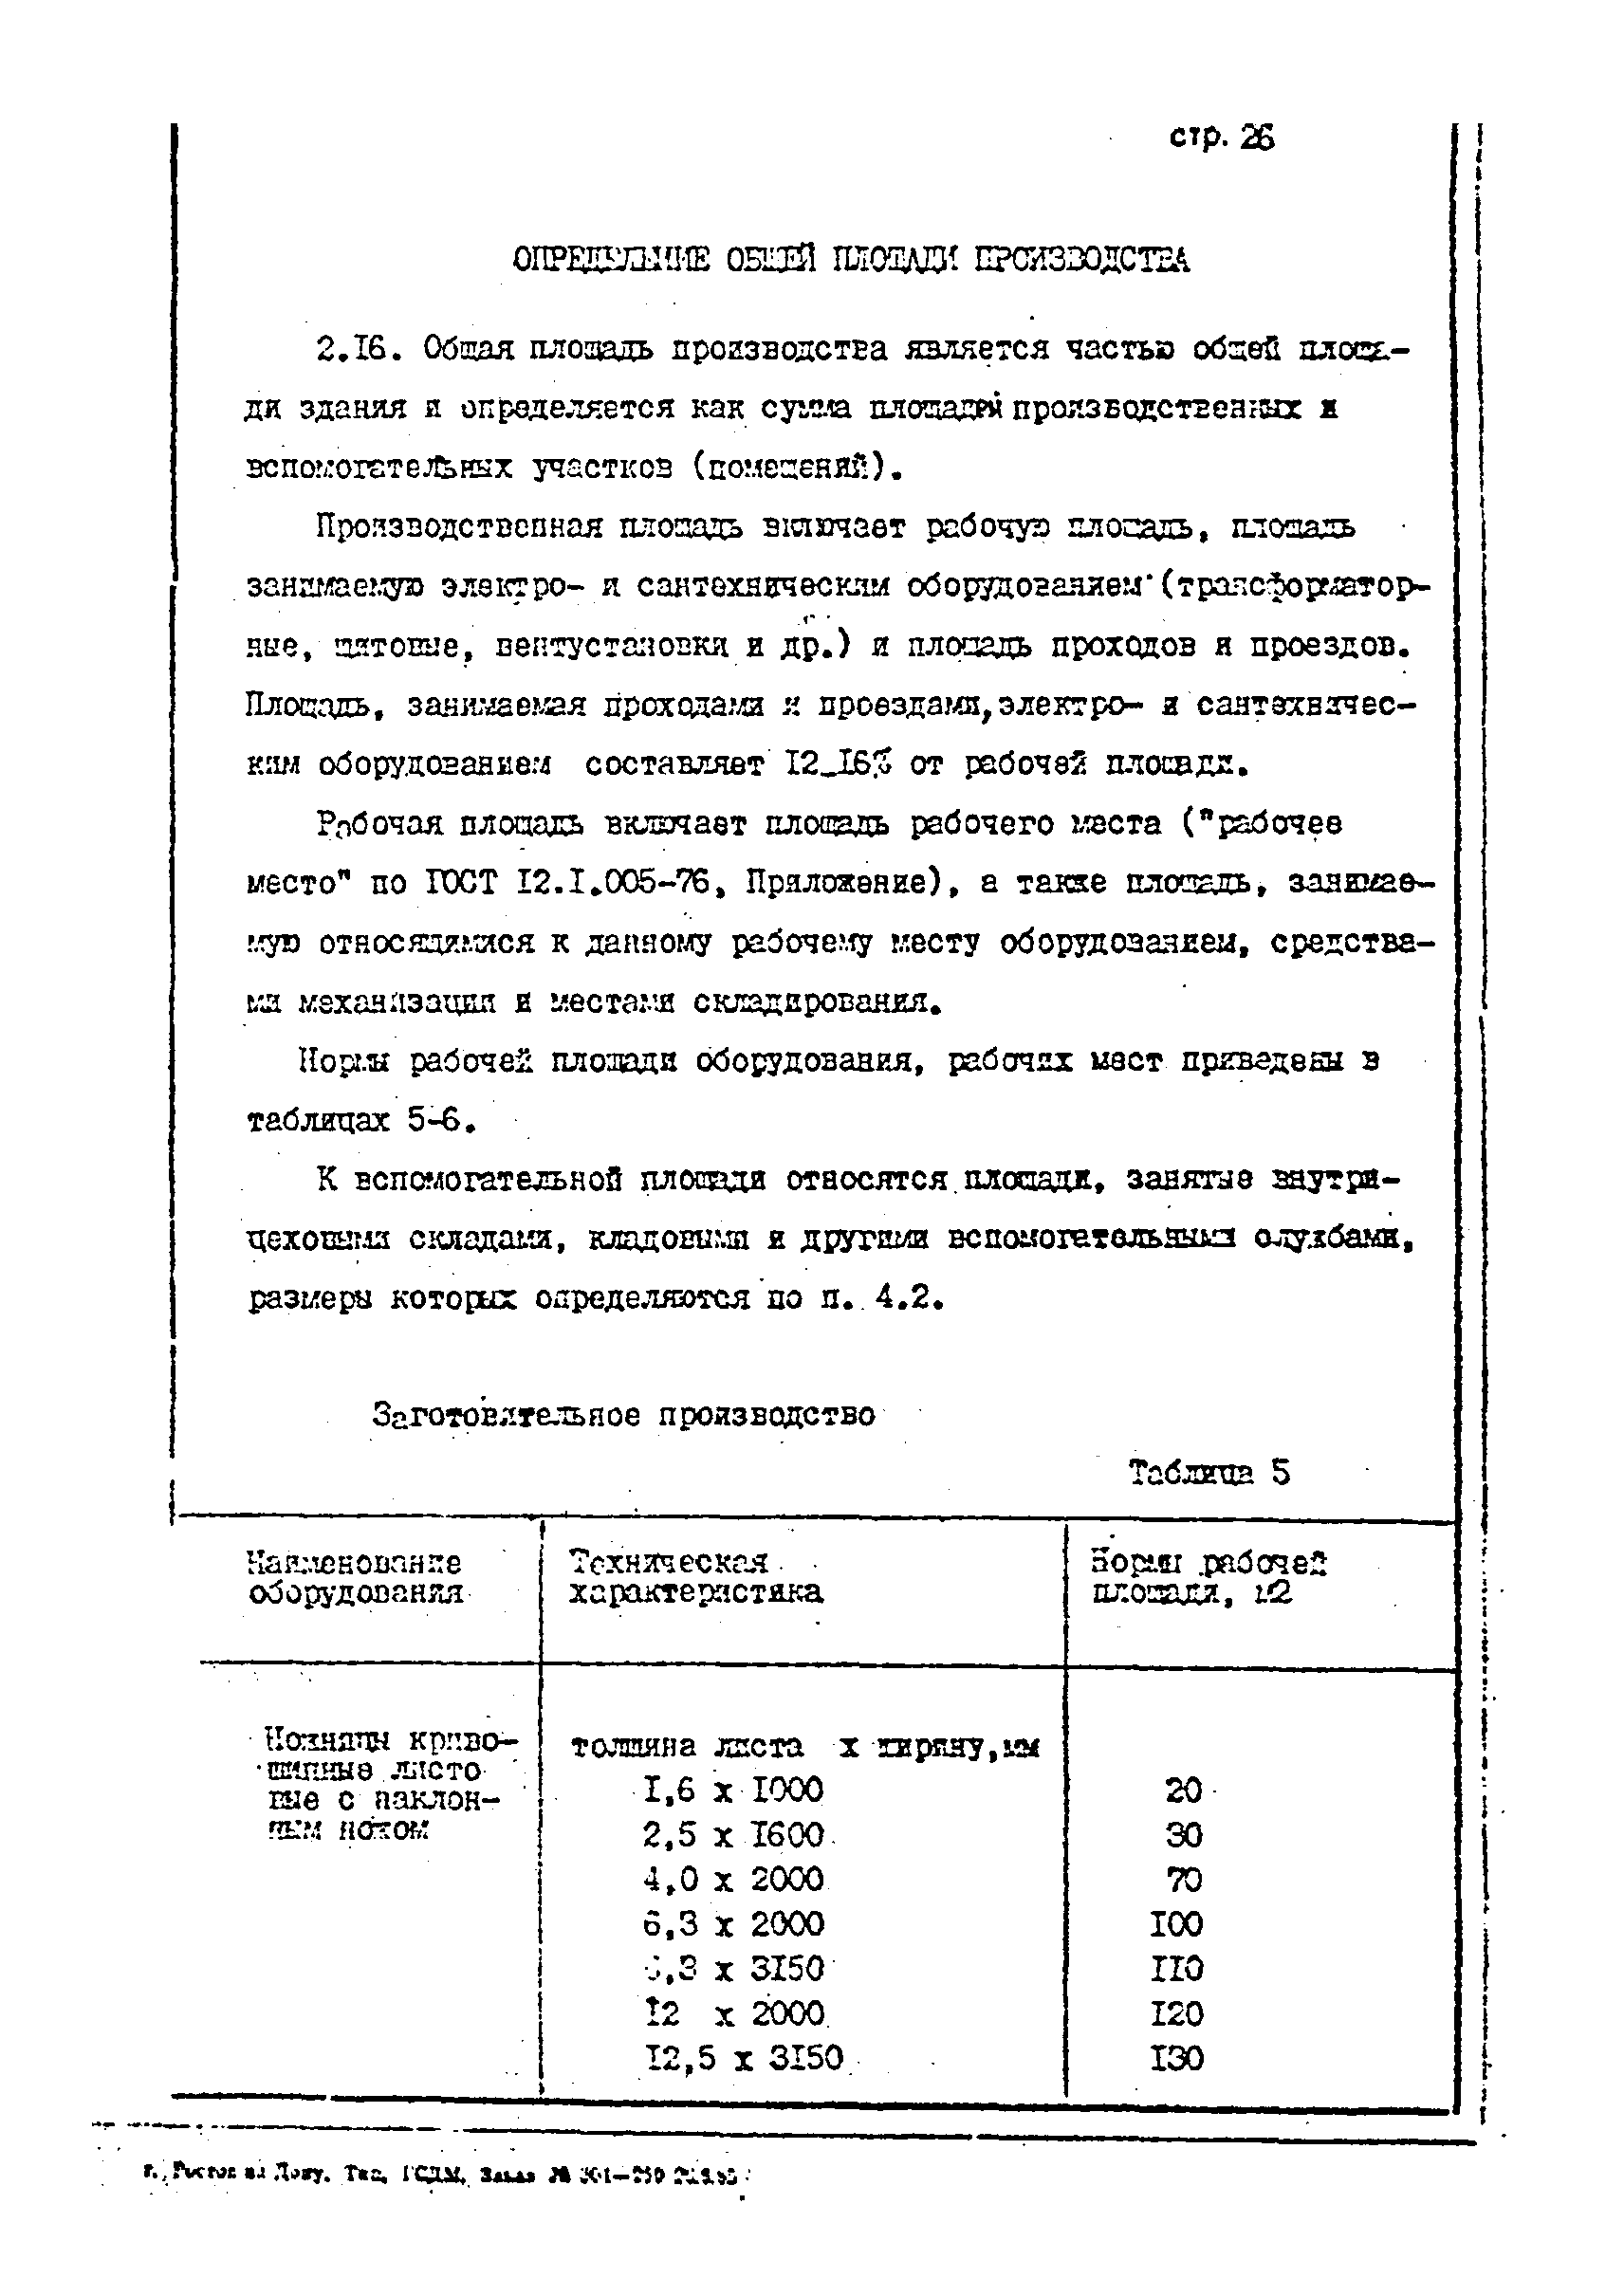 ОНТП 1-85/Минстройдормаш